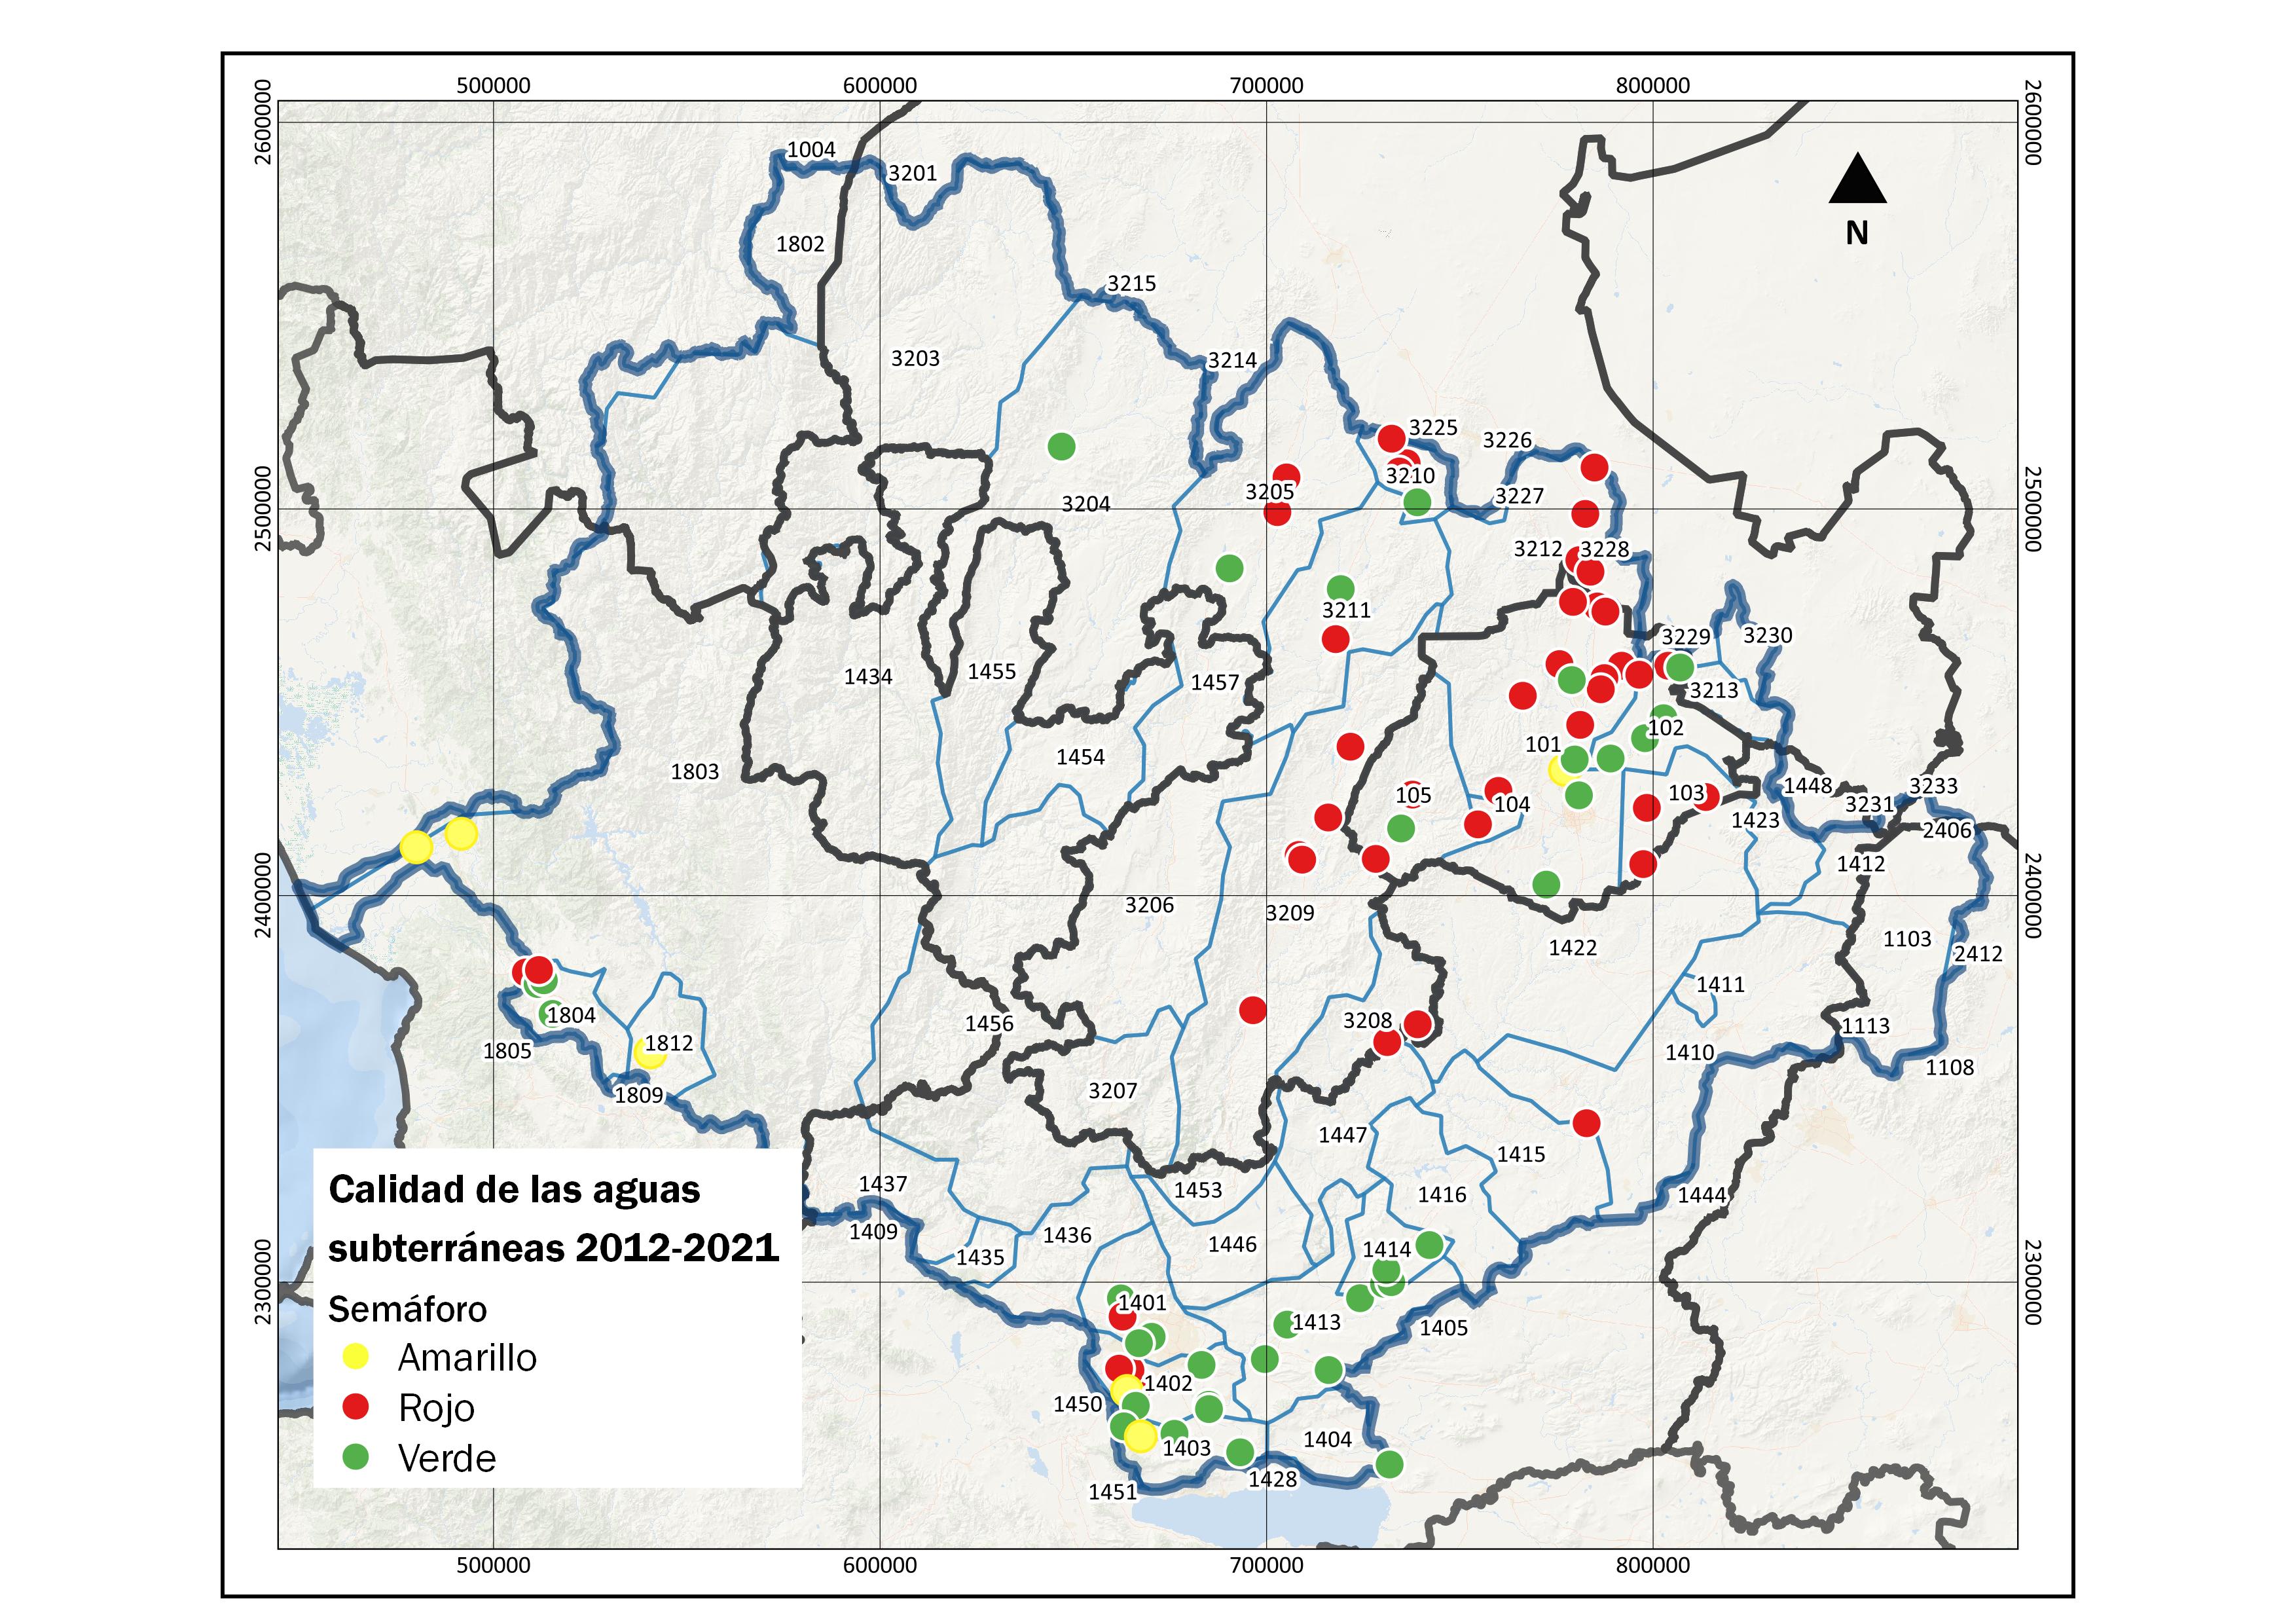 Calidad aguas subterráneas 2012-2021